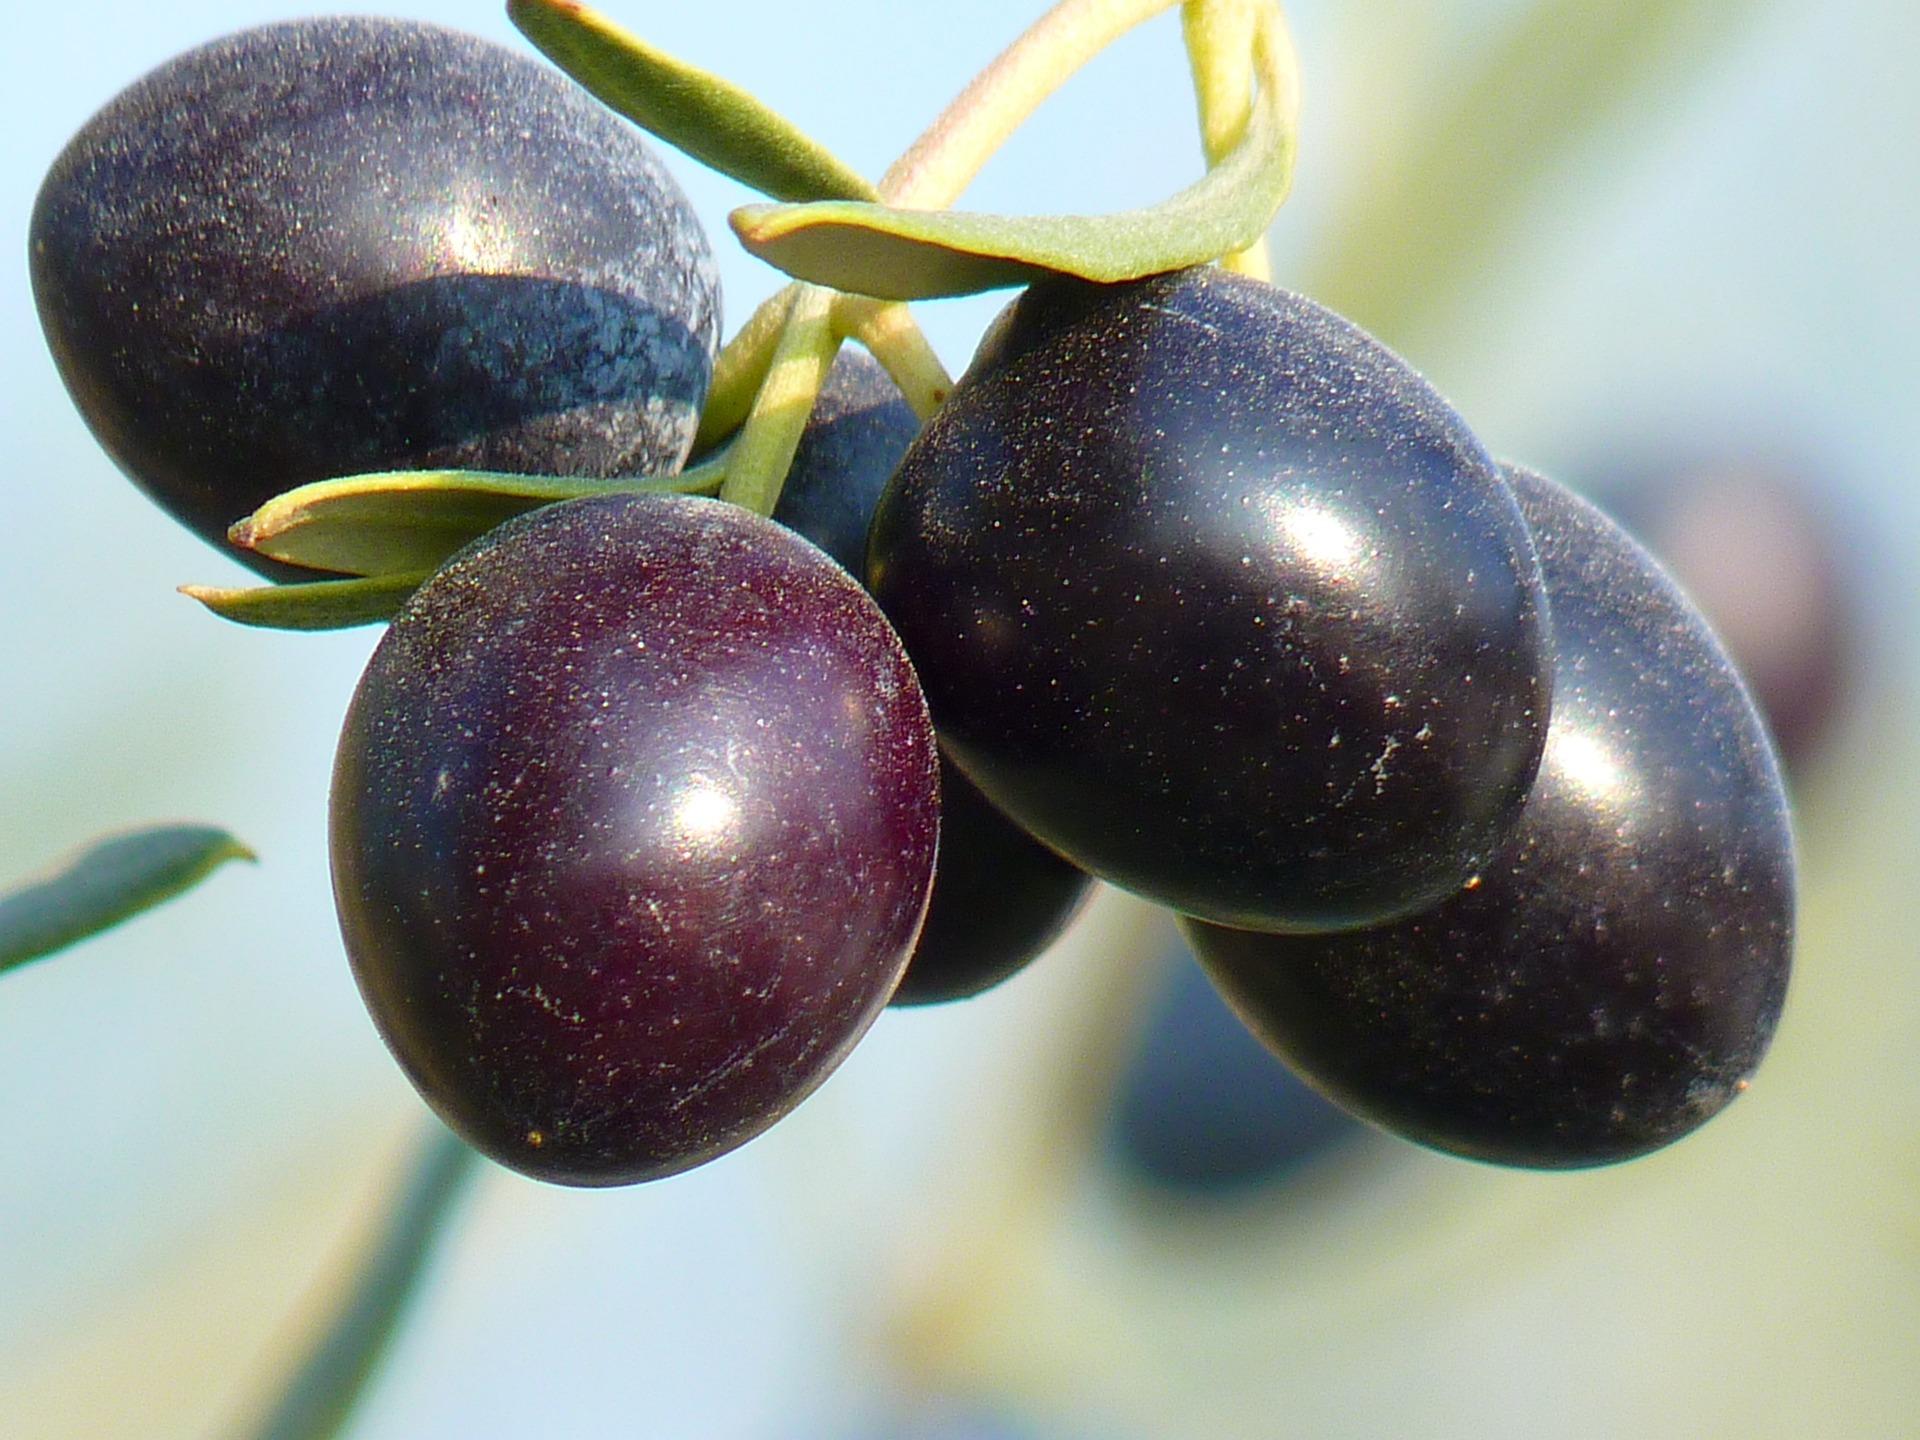 olives 15016_1920